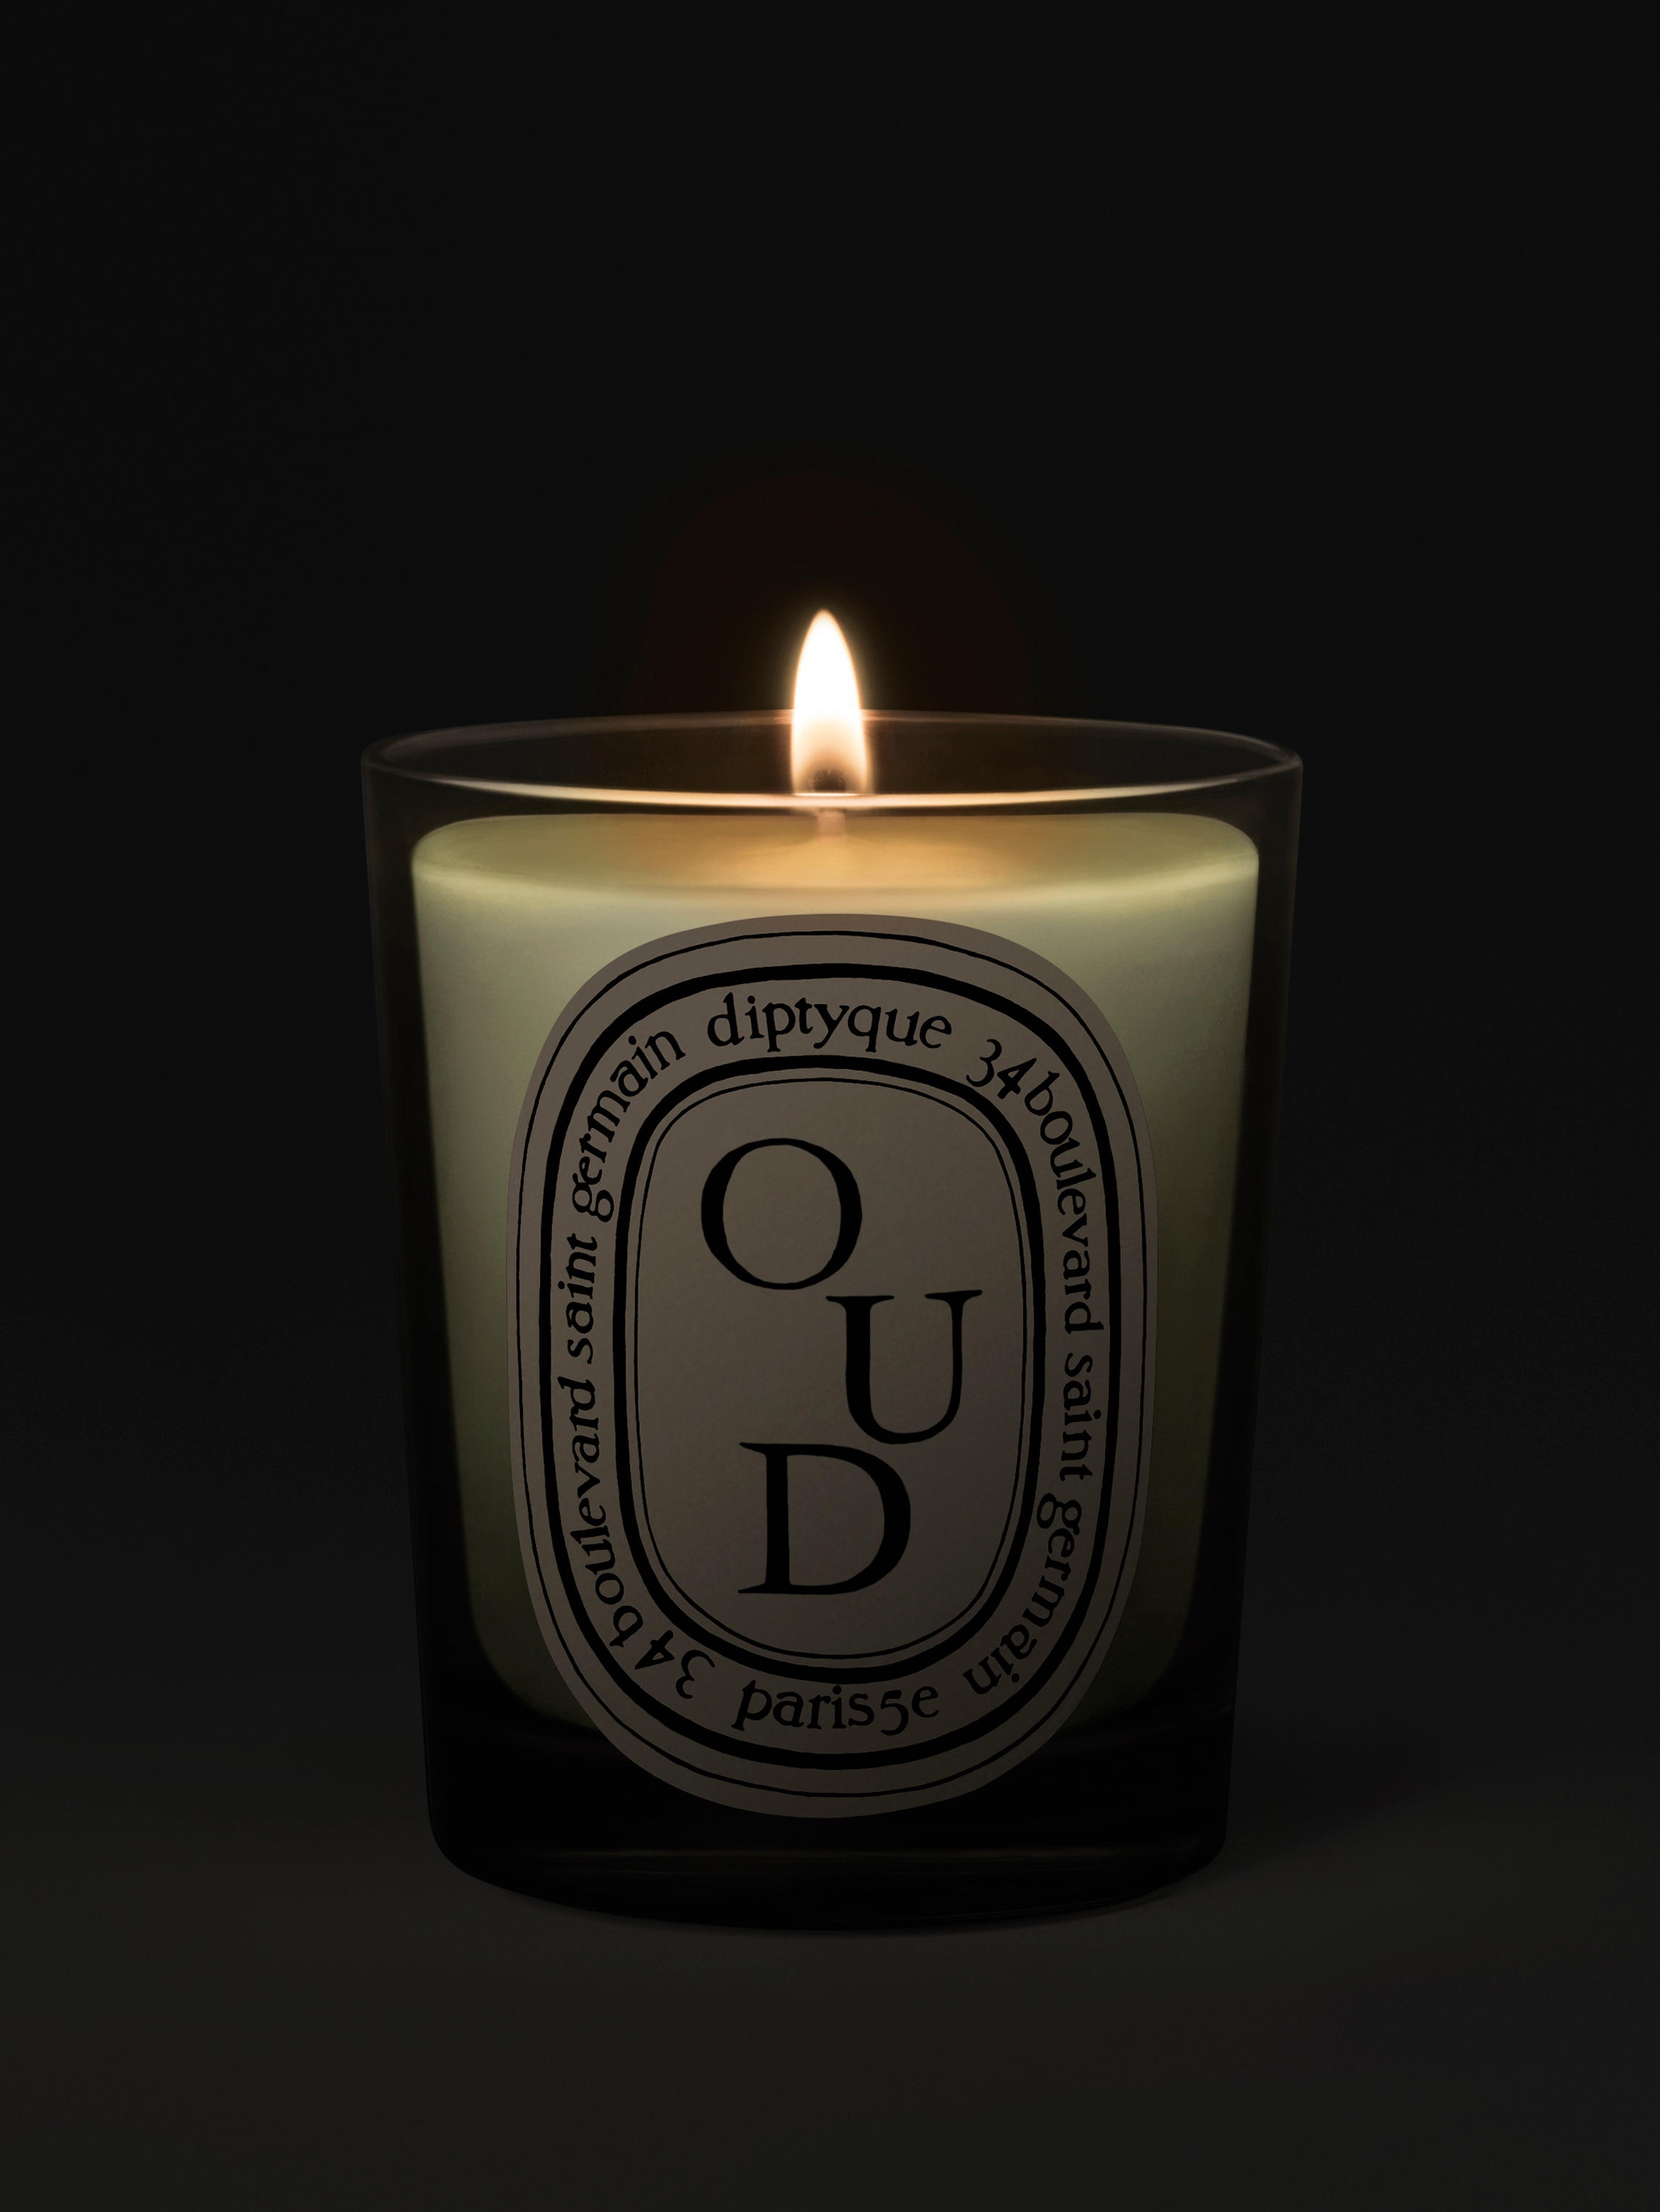 Eau de Parfums  Candles & Oud – Candles & Oud